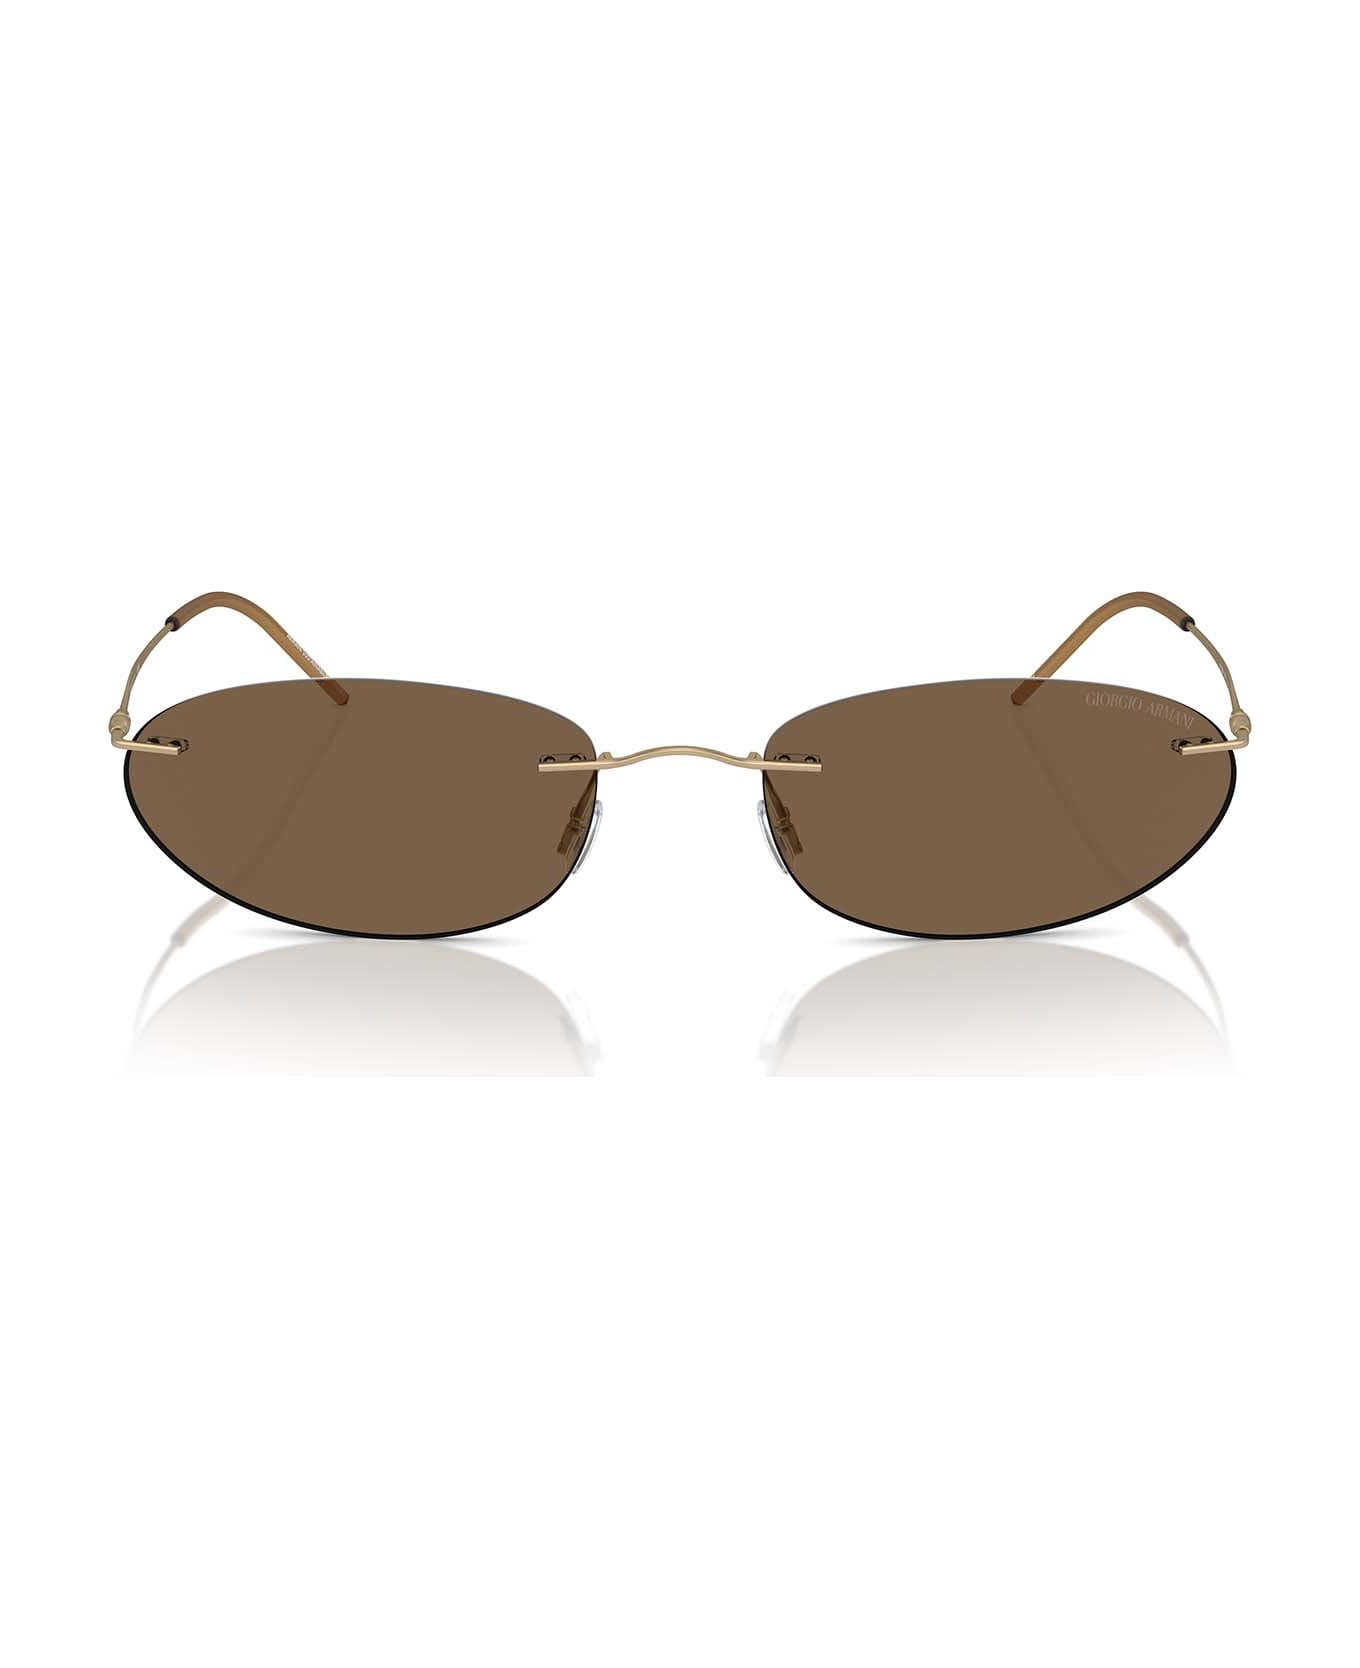 Giorgio Armani Ar1508m Matte Pale Gold Sunglasses - Matte Pale Gold サングラス